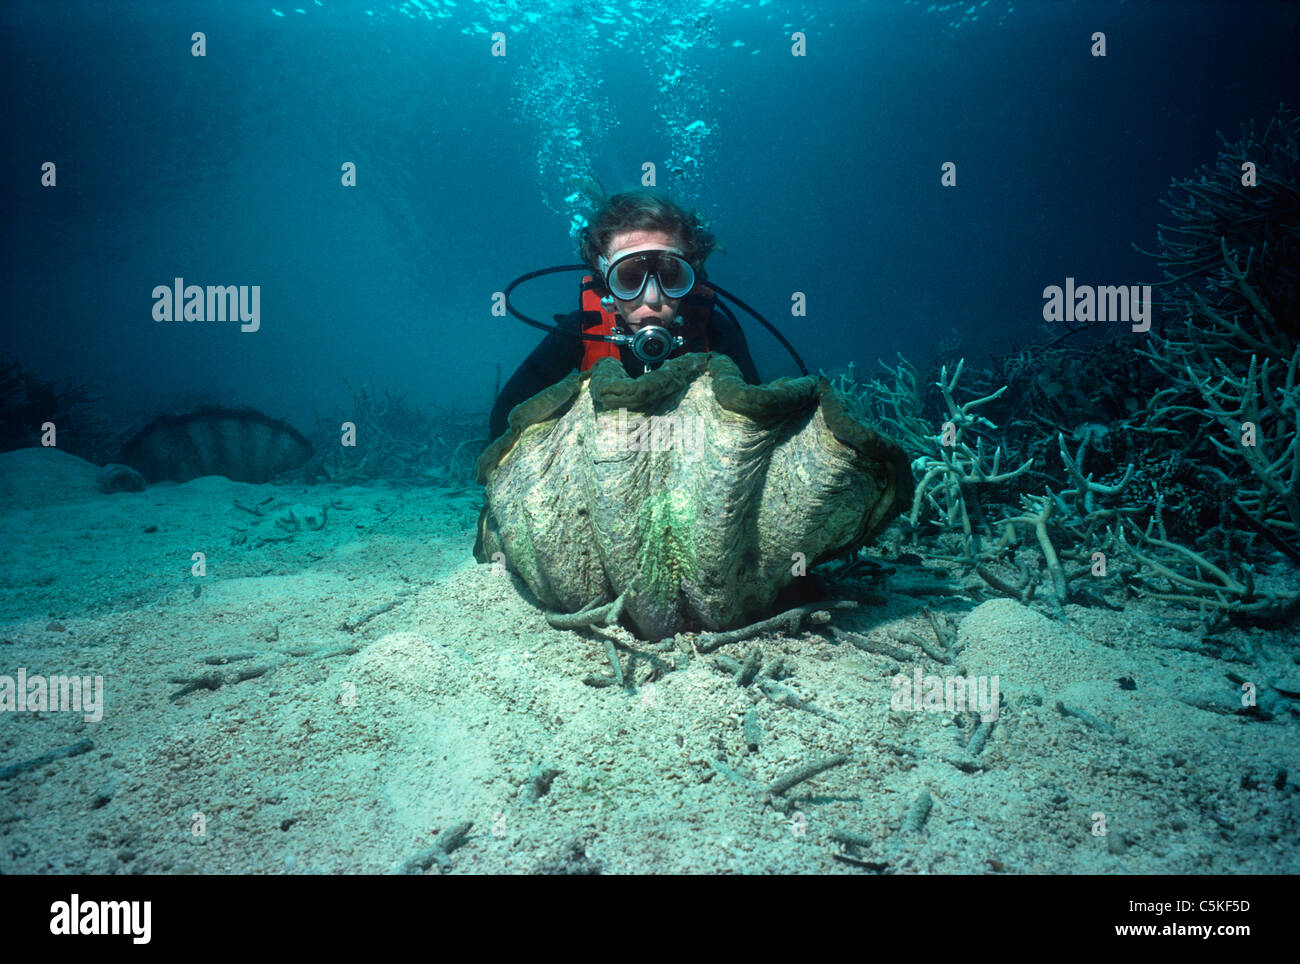 Taucher, die Prüfung einer geriffelten Riesenmuschel (Tridacna Squamosa) an einem Korallenriff. Palau, Mikronesien - Pazifischer Ozean Stockfoto